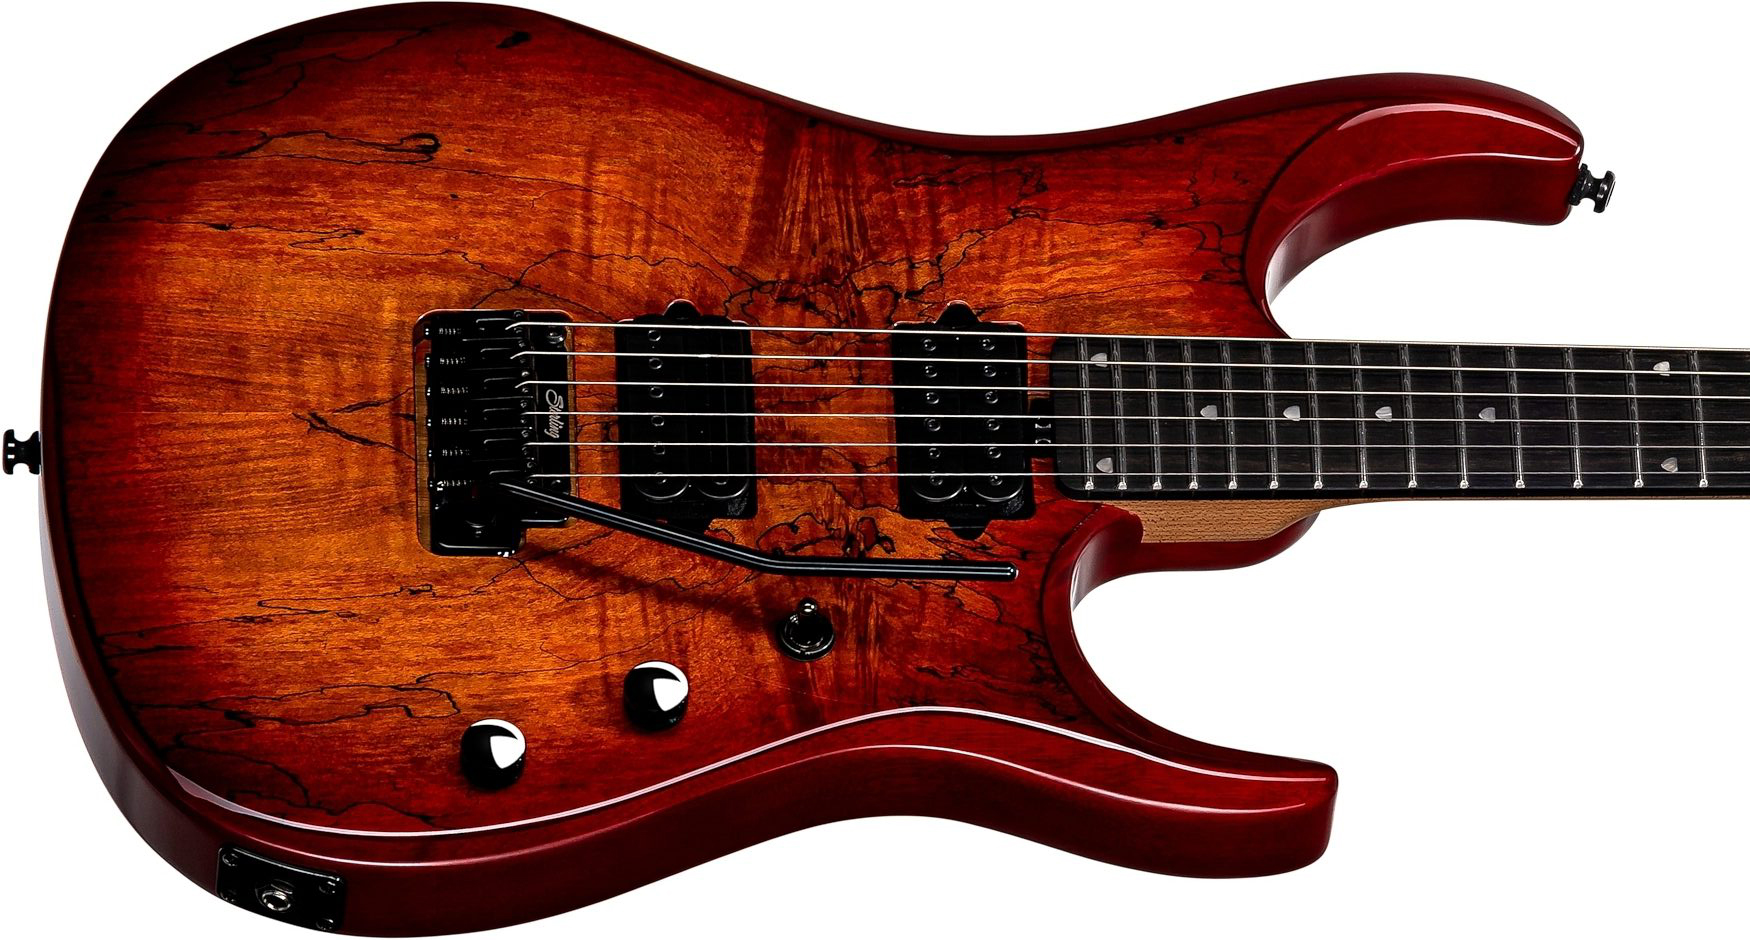 Sterling By Musicman John Petrucci Jp150dsm Dimarzio Signature 2h Trem Eb - Blood Orange Burst - Guitarra eléctrica de autor - Variation 2